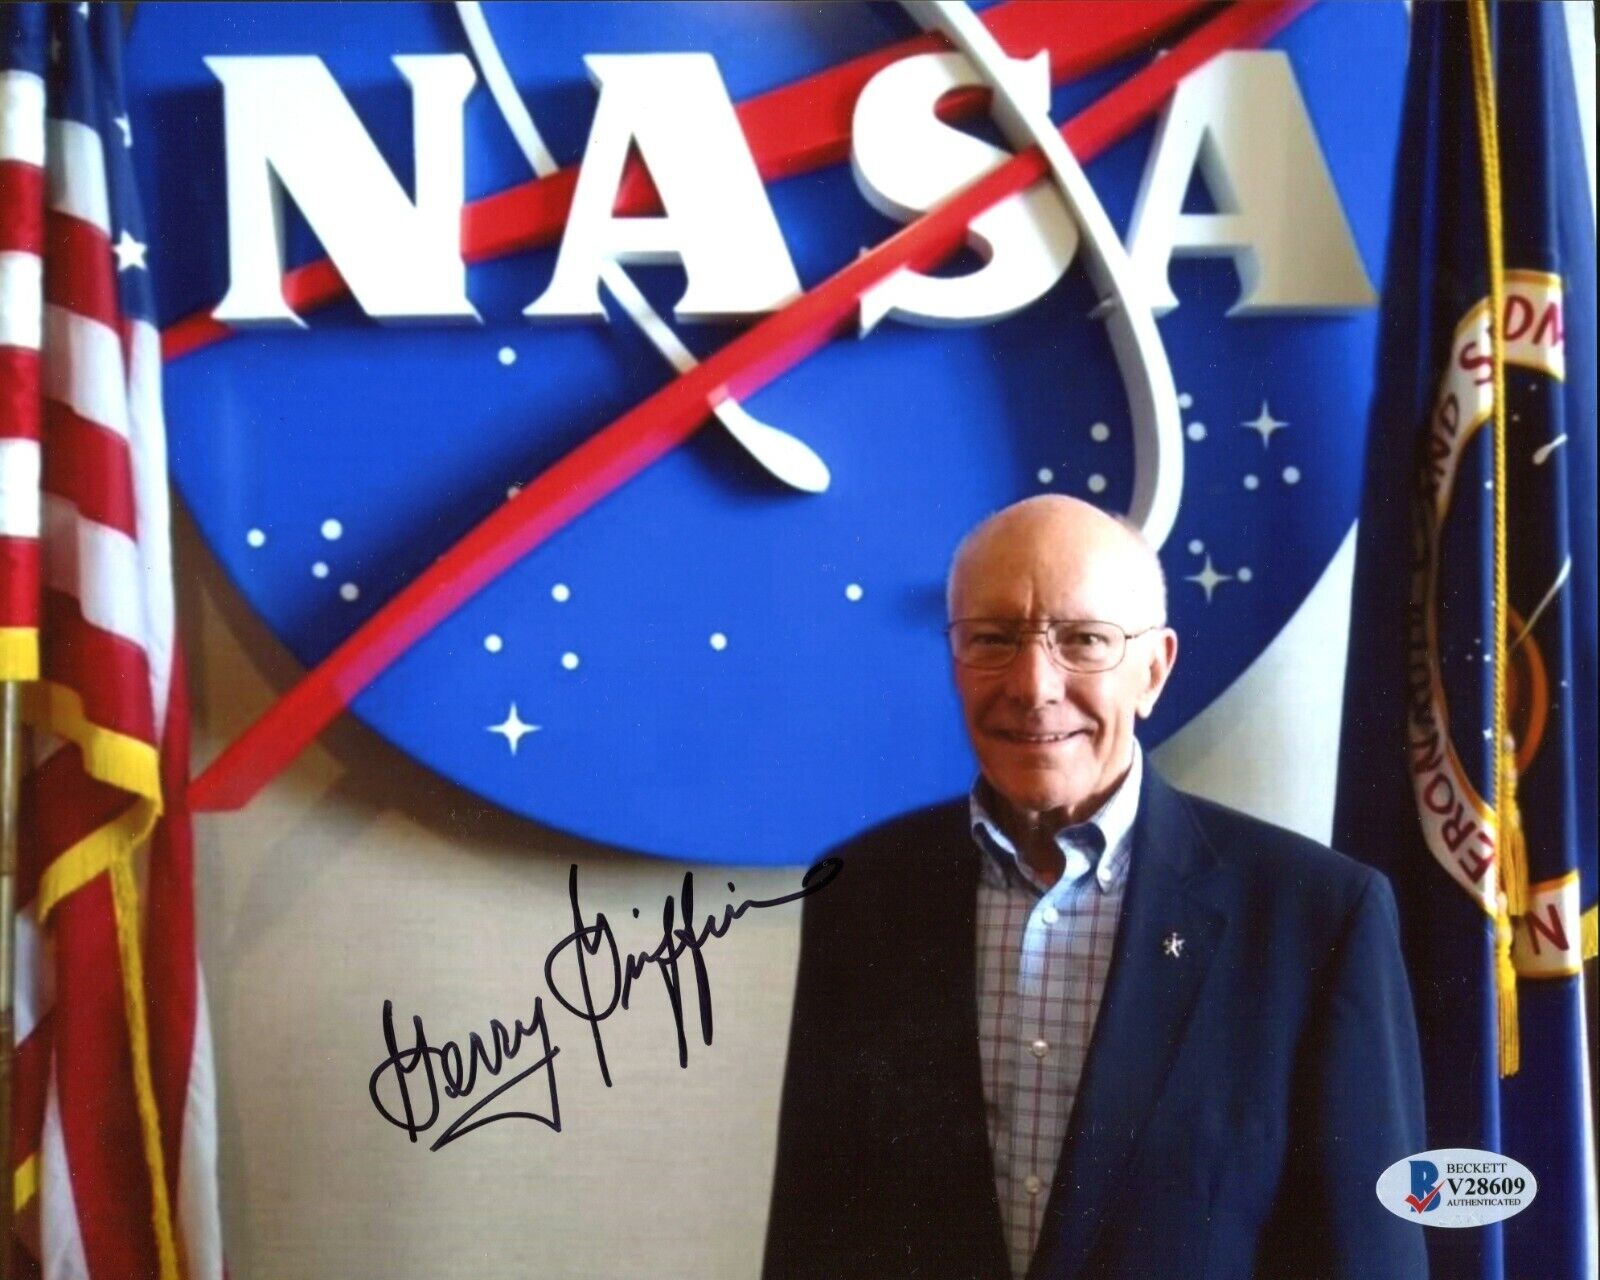 Gerry Griffin Apollo 13 Flight NASA Signed 8x10 Photo Autograph BAS Beckett COA